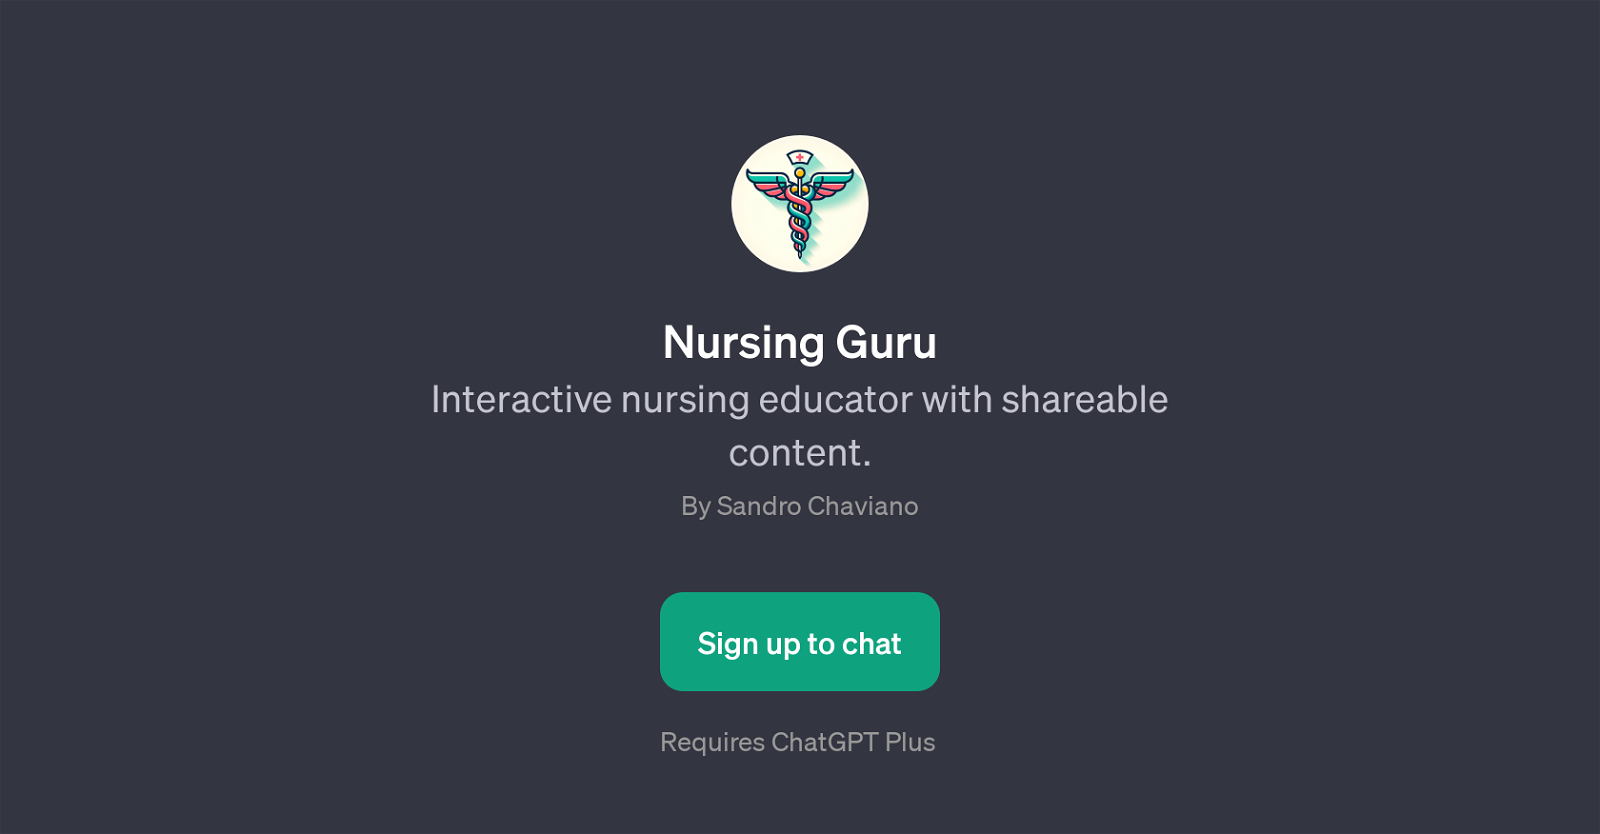 Nursing Guru website